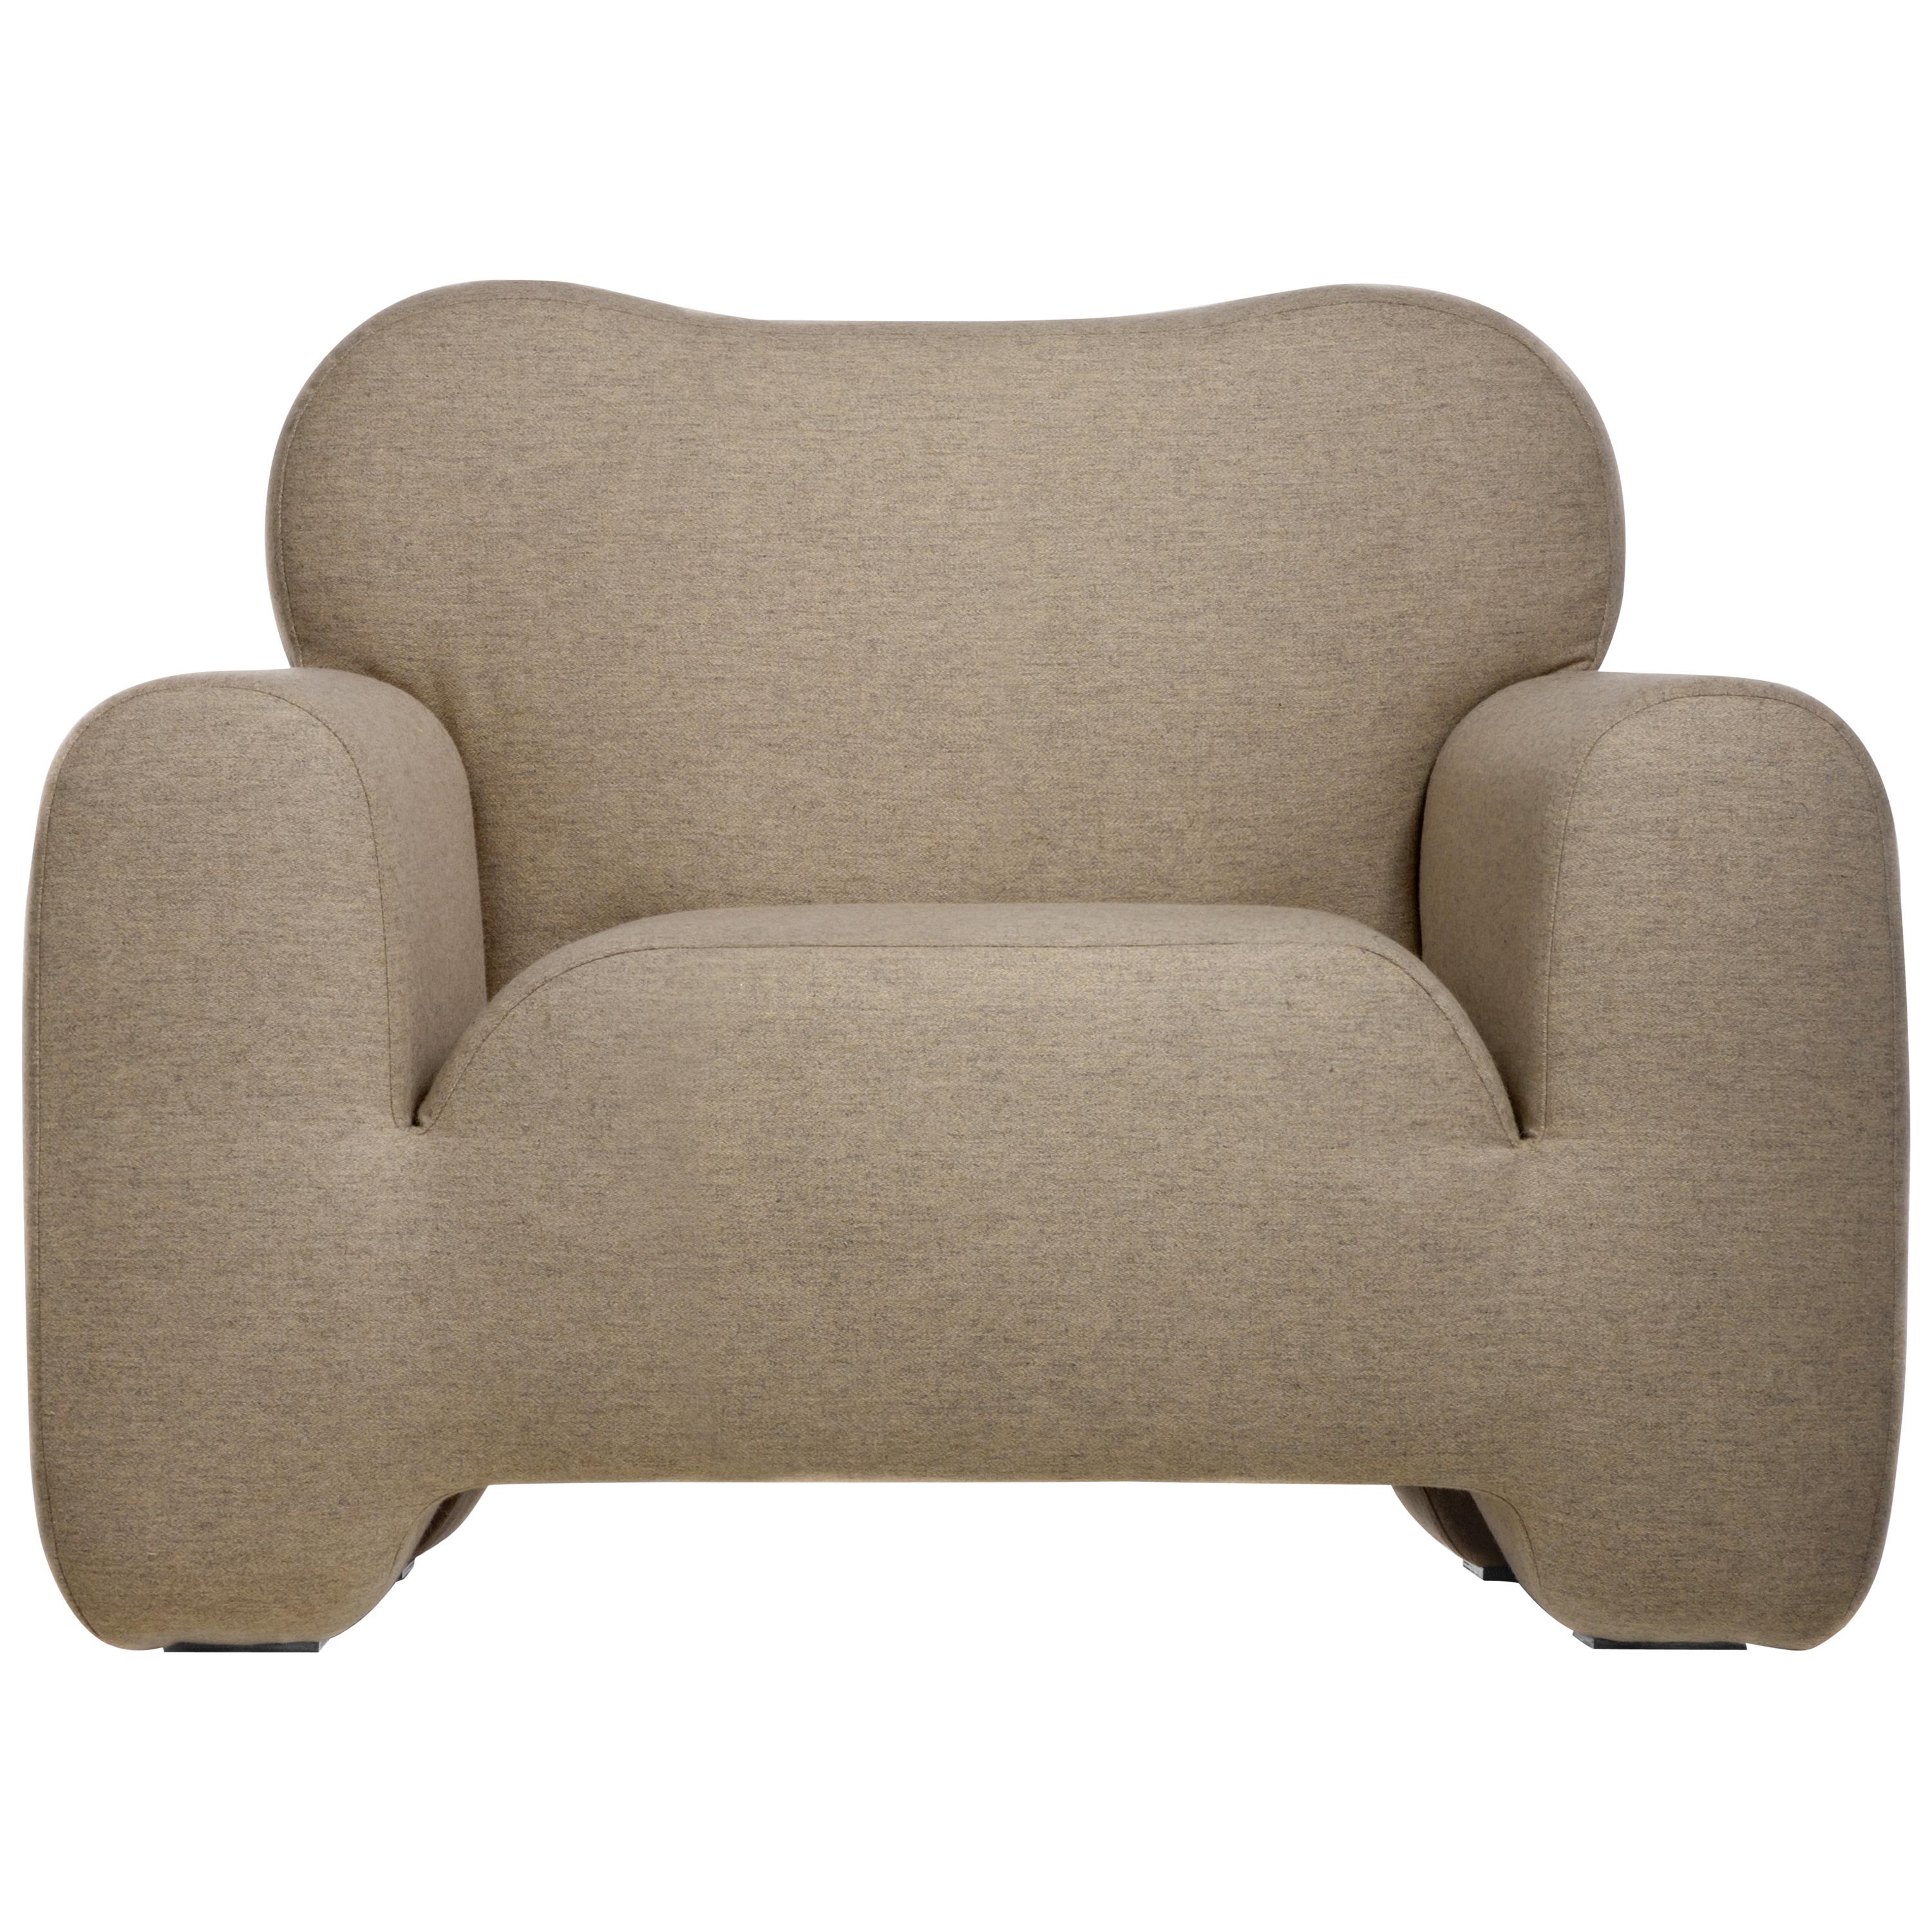 Fluffy Contemporary Armchair by FAINA